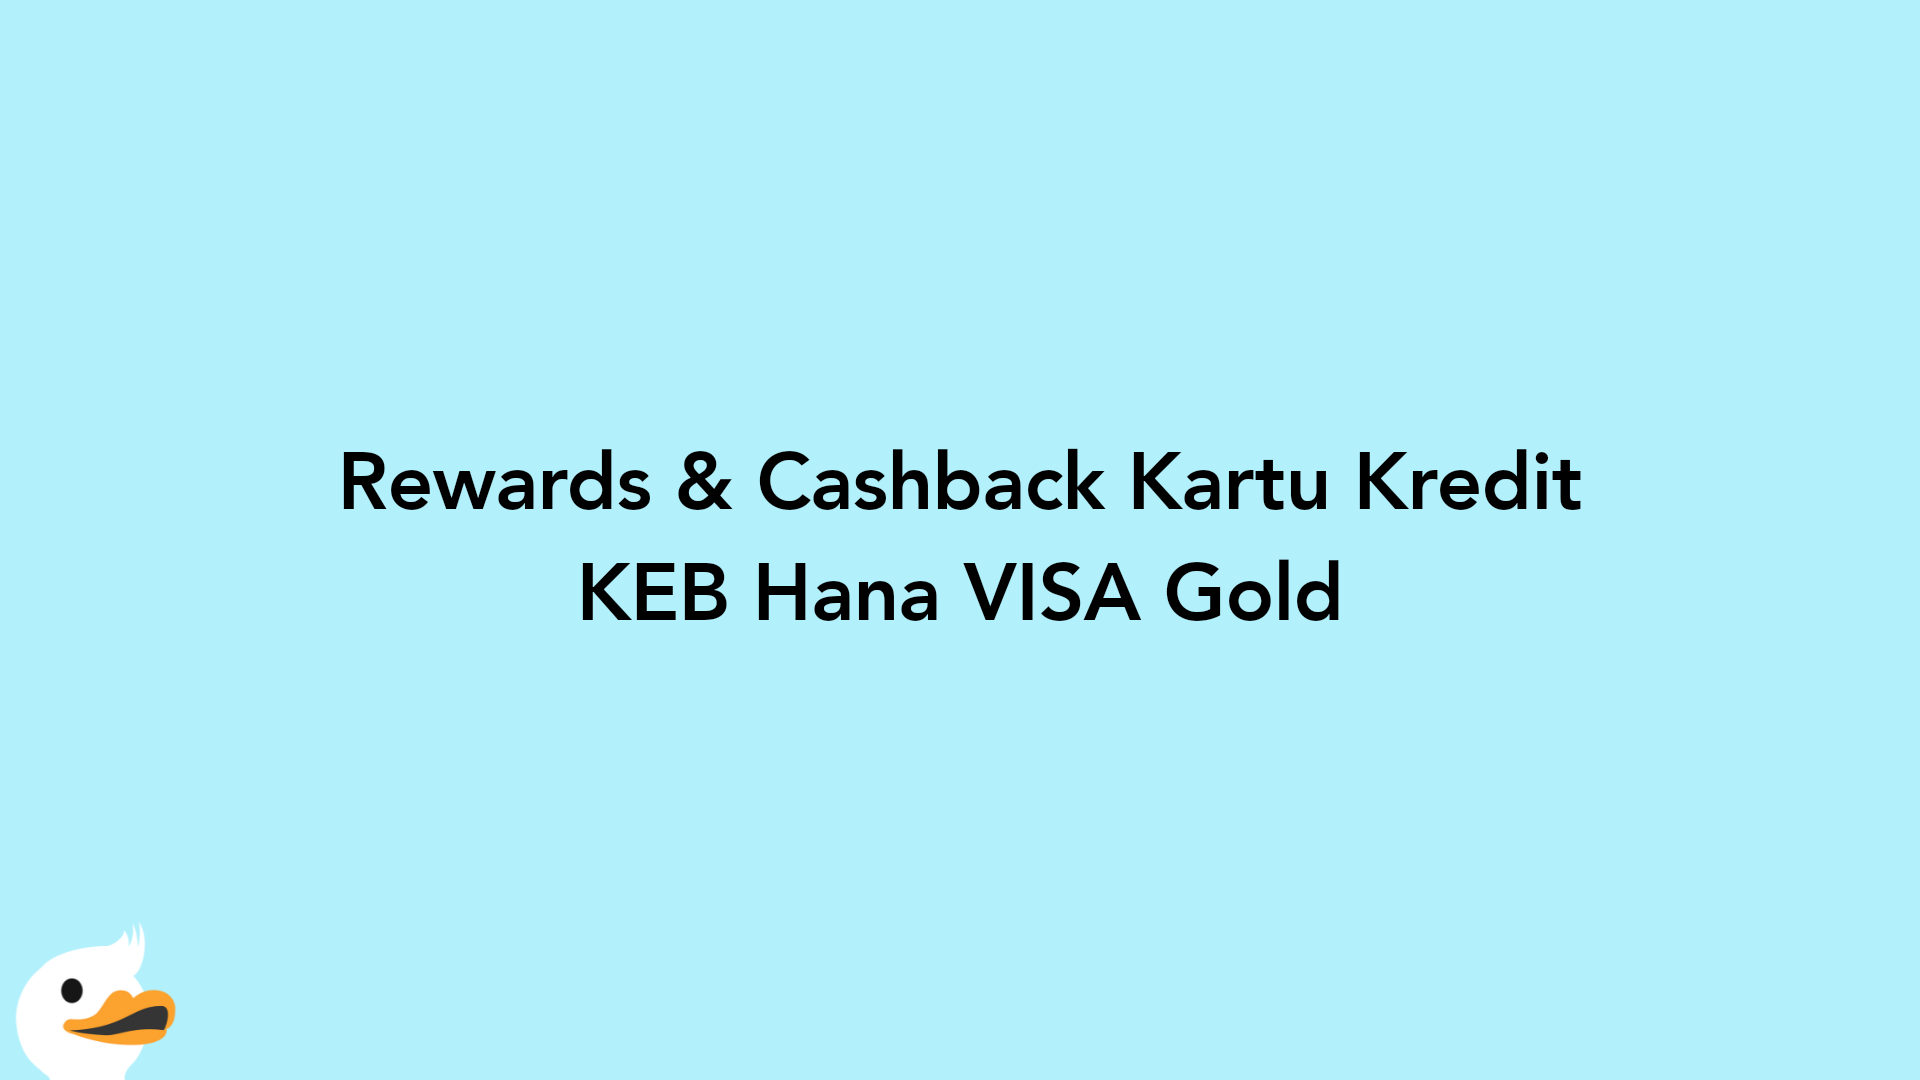 Rewards & Cashback Kartu Kredit KEB Hana VISA Gold